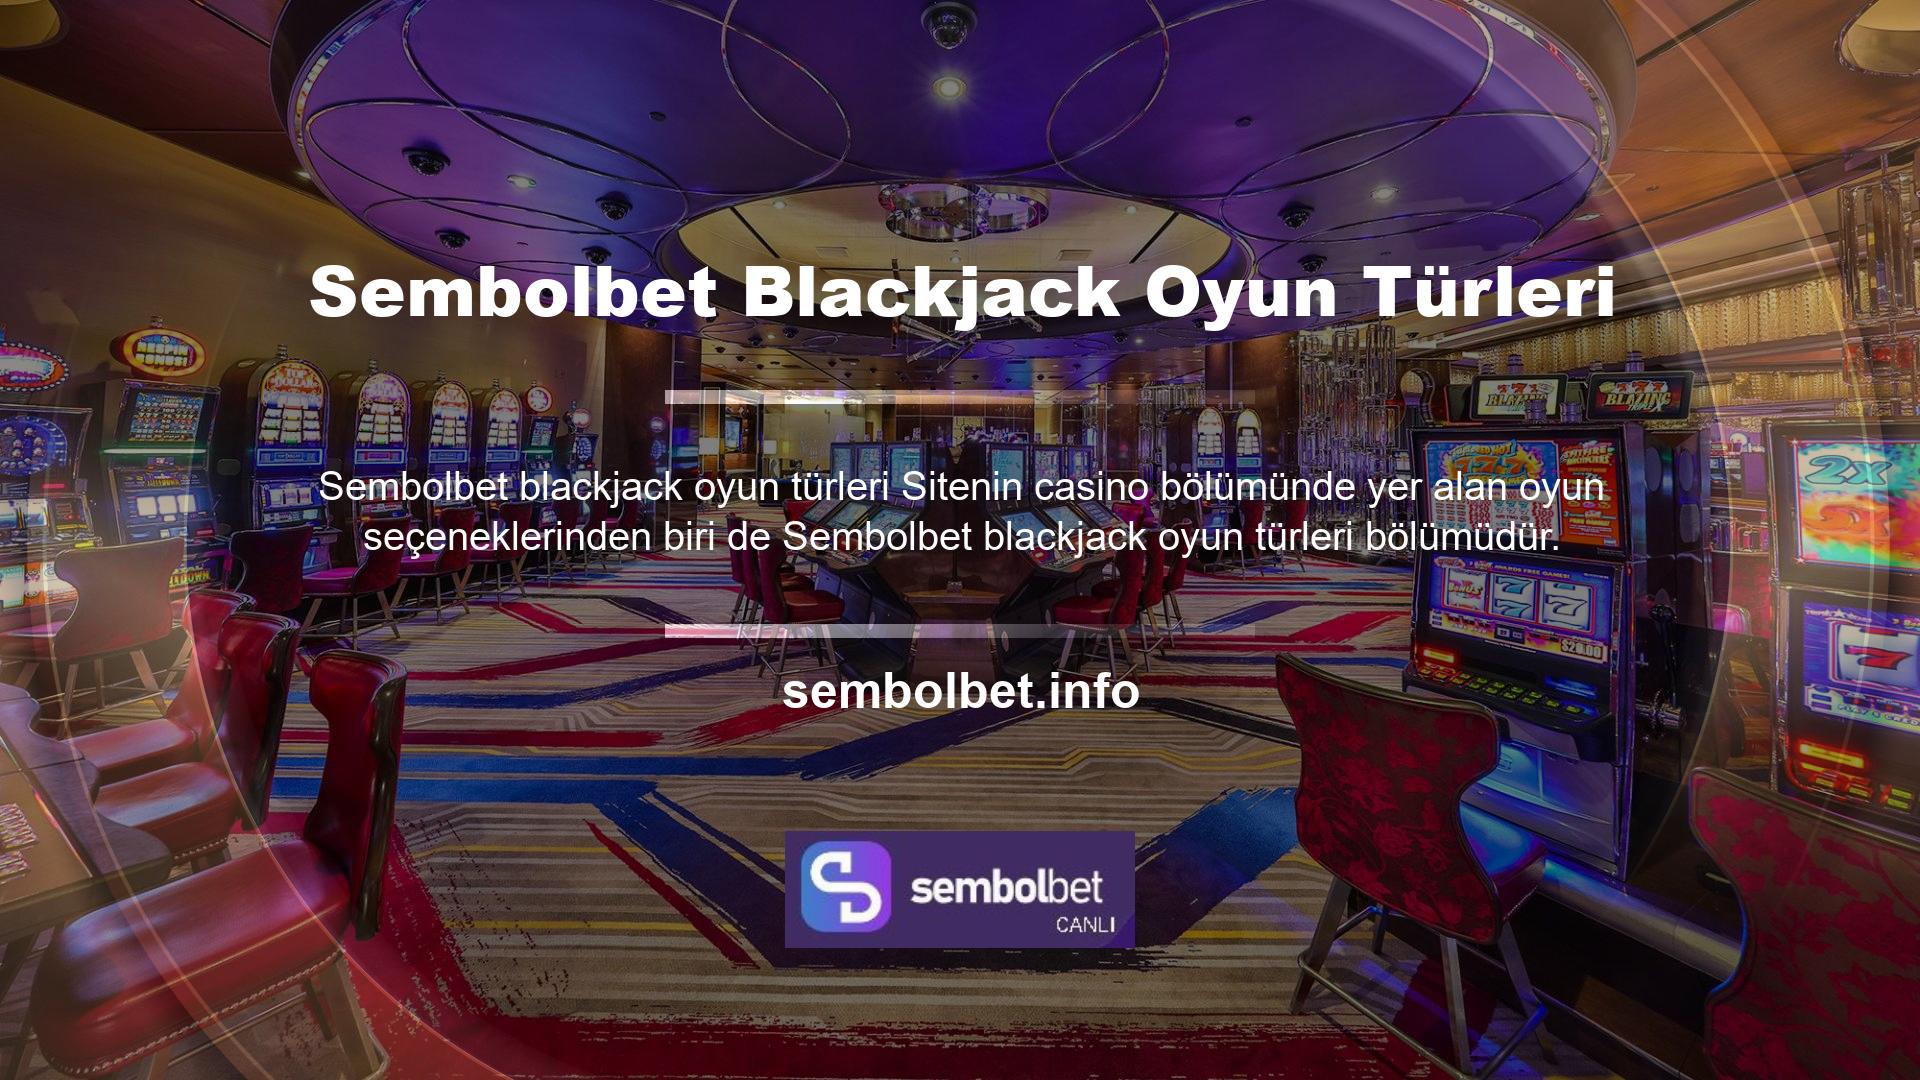 Sembolbet blackjack oyun türleri Blackjack'teki oyun türlerine baktığımızda, oyun seçeneklerinin sadece Blackjack adı verilen bir formda sunulduğunu görebiliriz